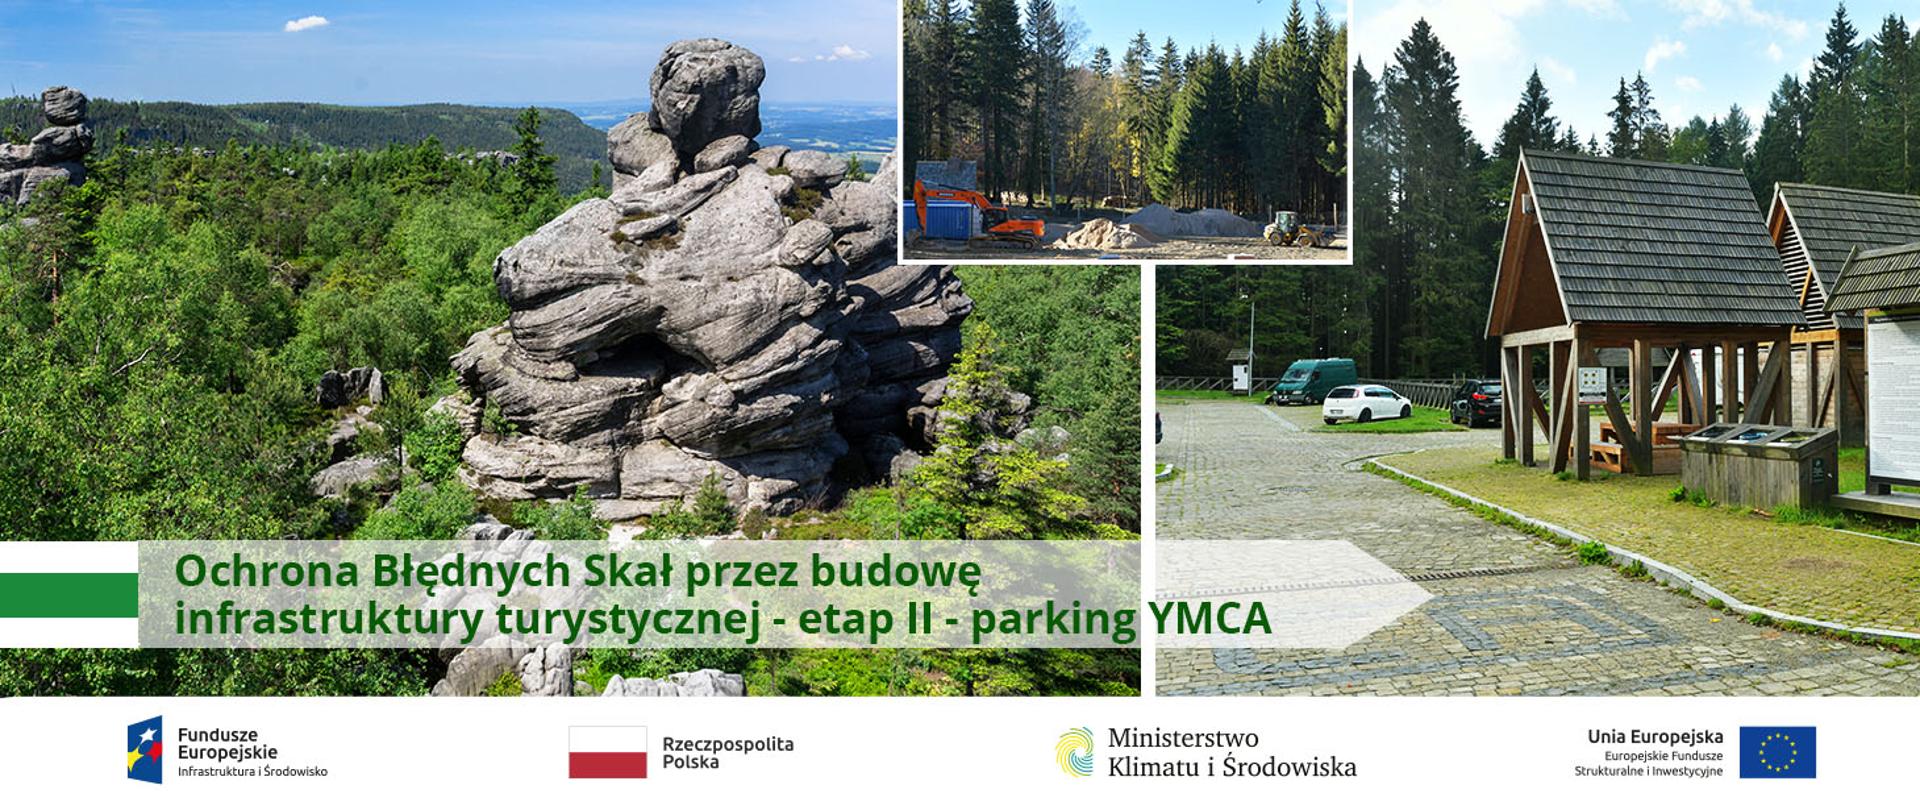 Ochrona Błędnych Skał przez budowę infrastruktury turystycznej - etap II - parking YMCA